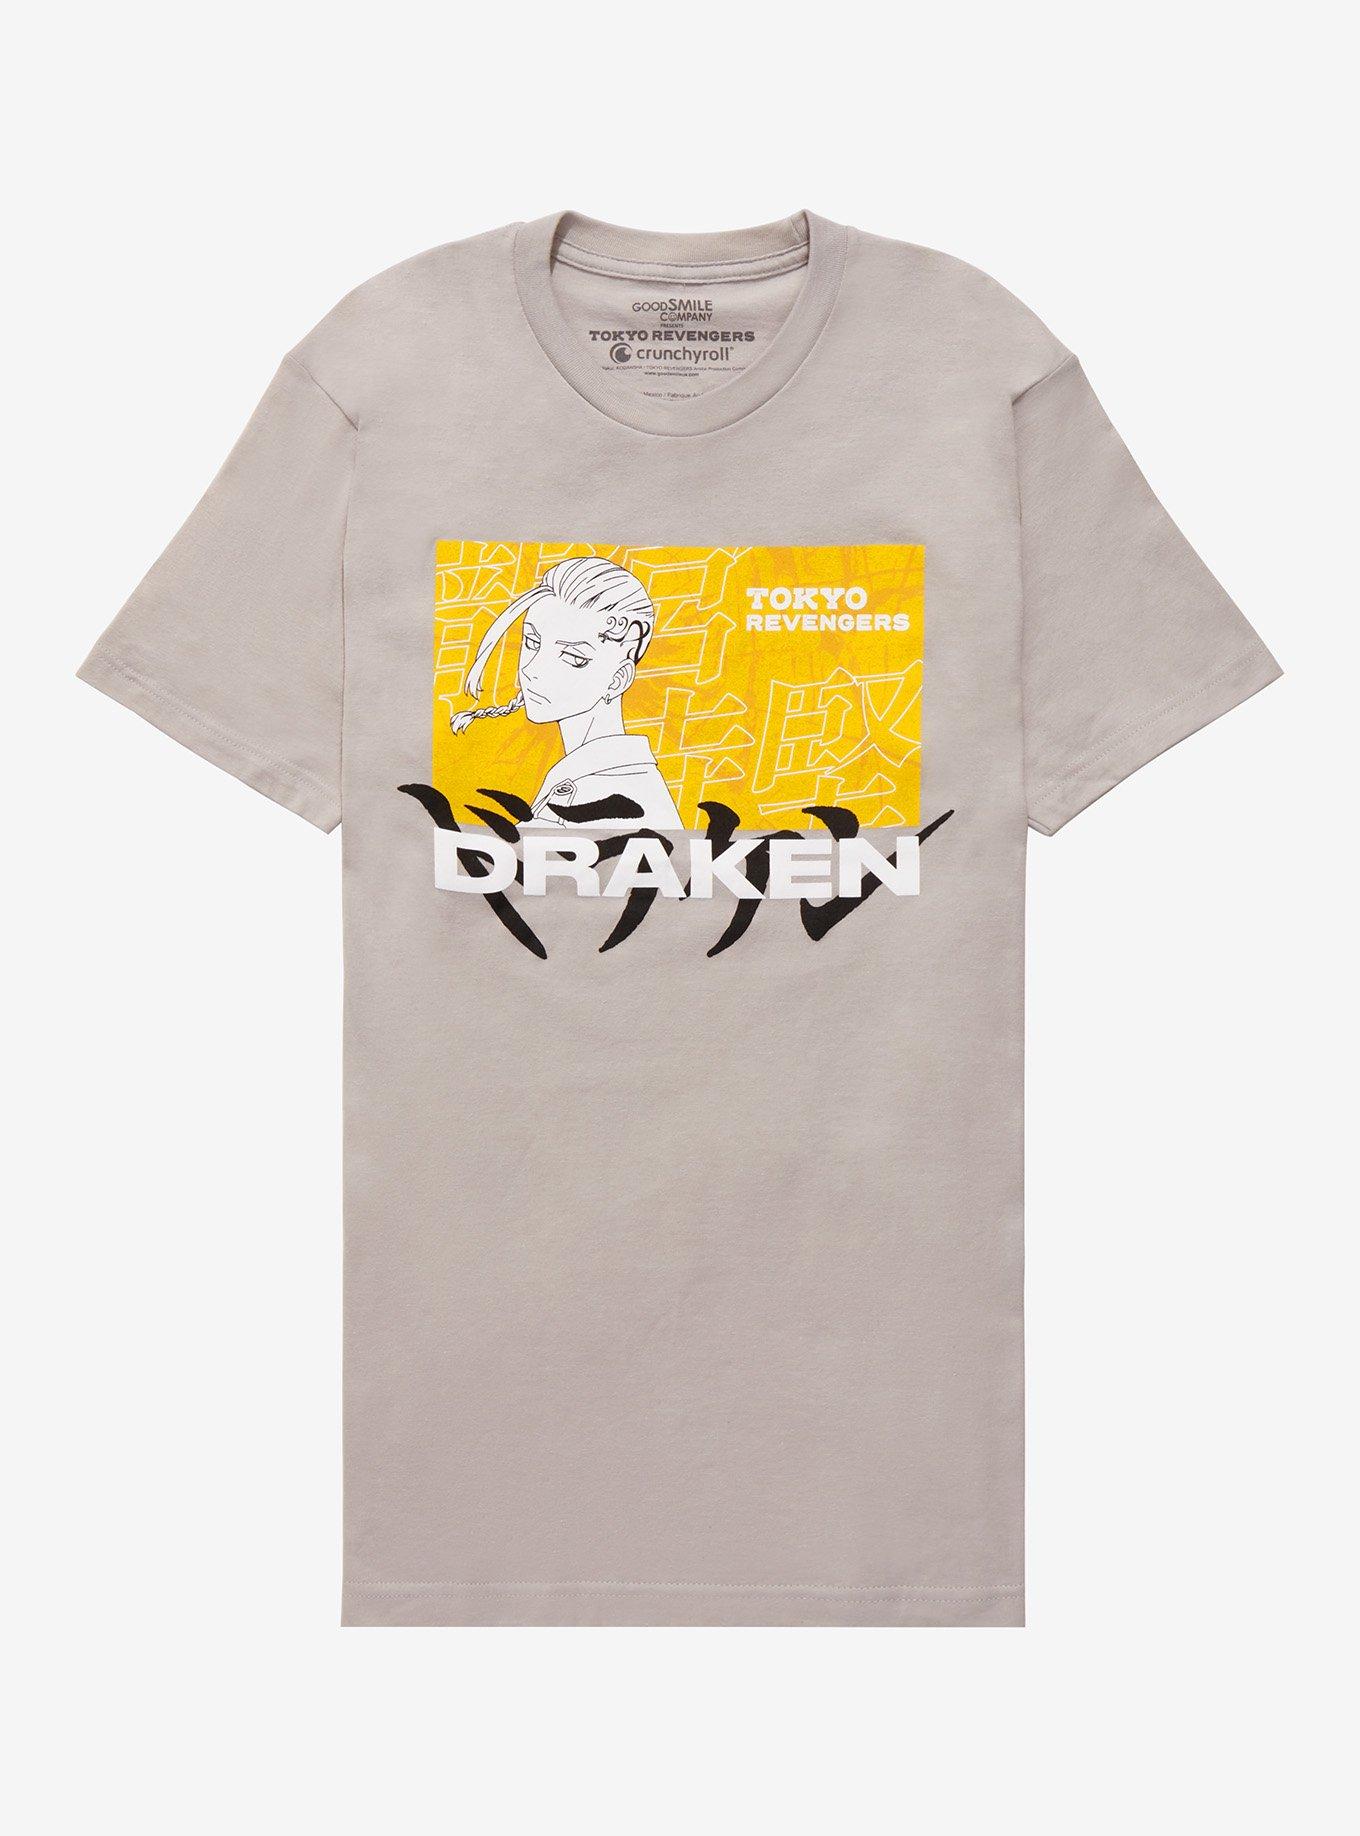 Tokyo Revengers Draken Profile T-Shirt | Hot Topic